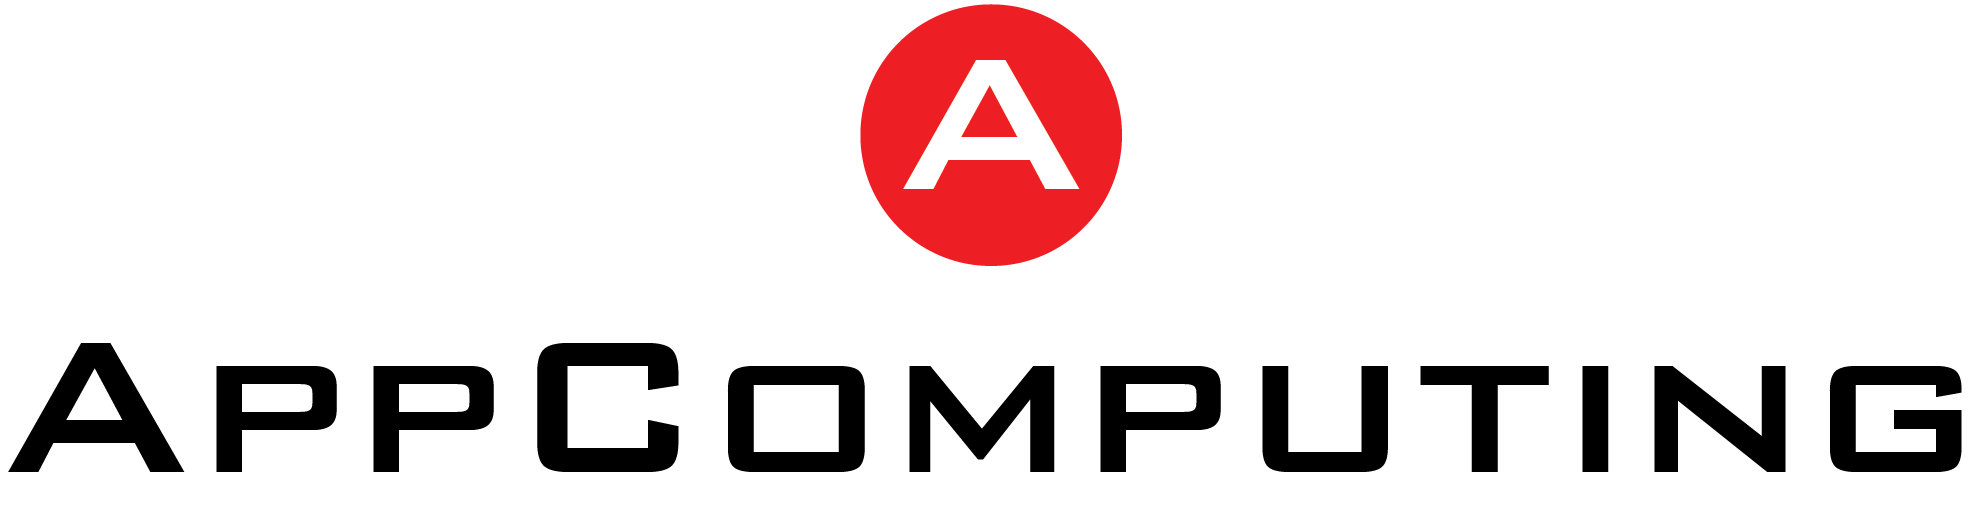 Planification des ressources de fabrication (MRP) basée sur la projection des ventes d’AppComputing - AppComputing, Inc.